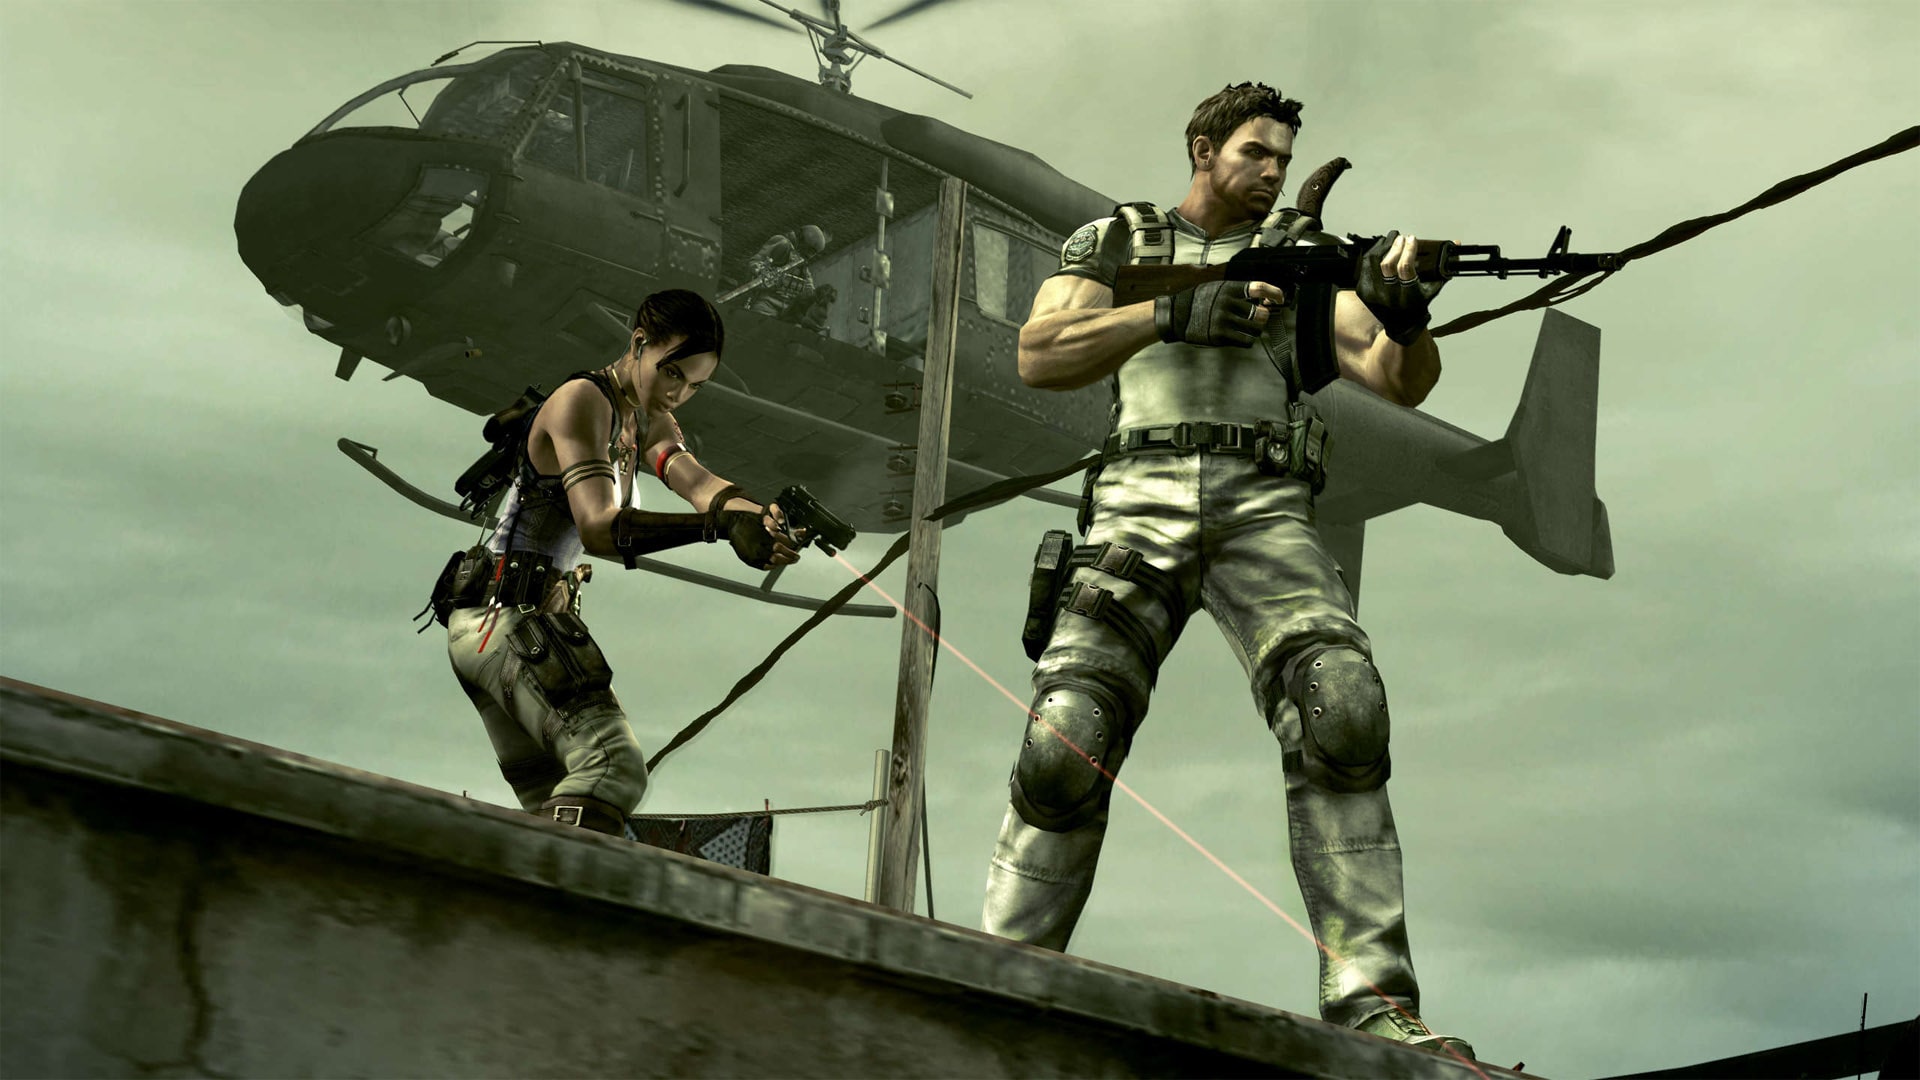 Resident Evil 5 chega ao PlayStation 4 em 28 de junho - MeuPlayStation